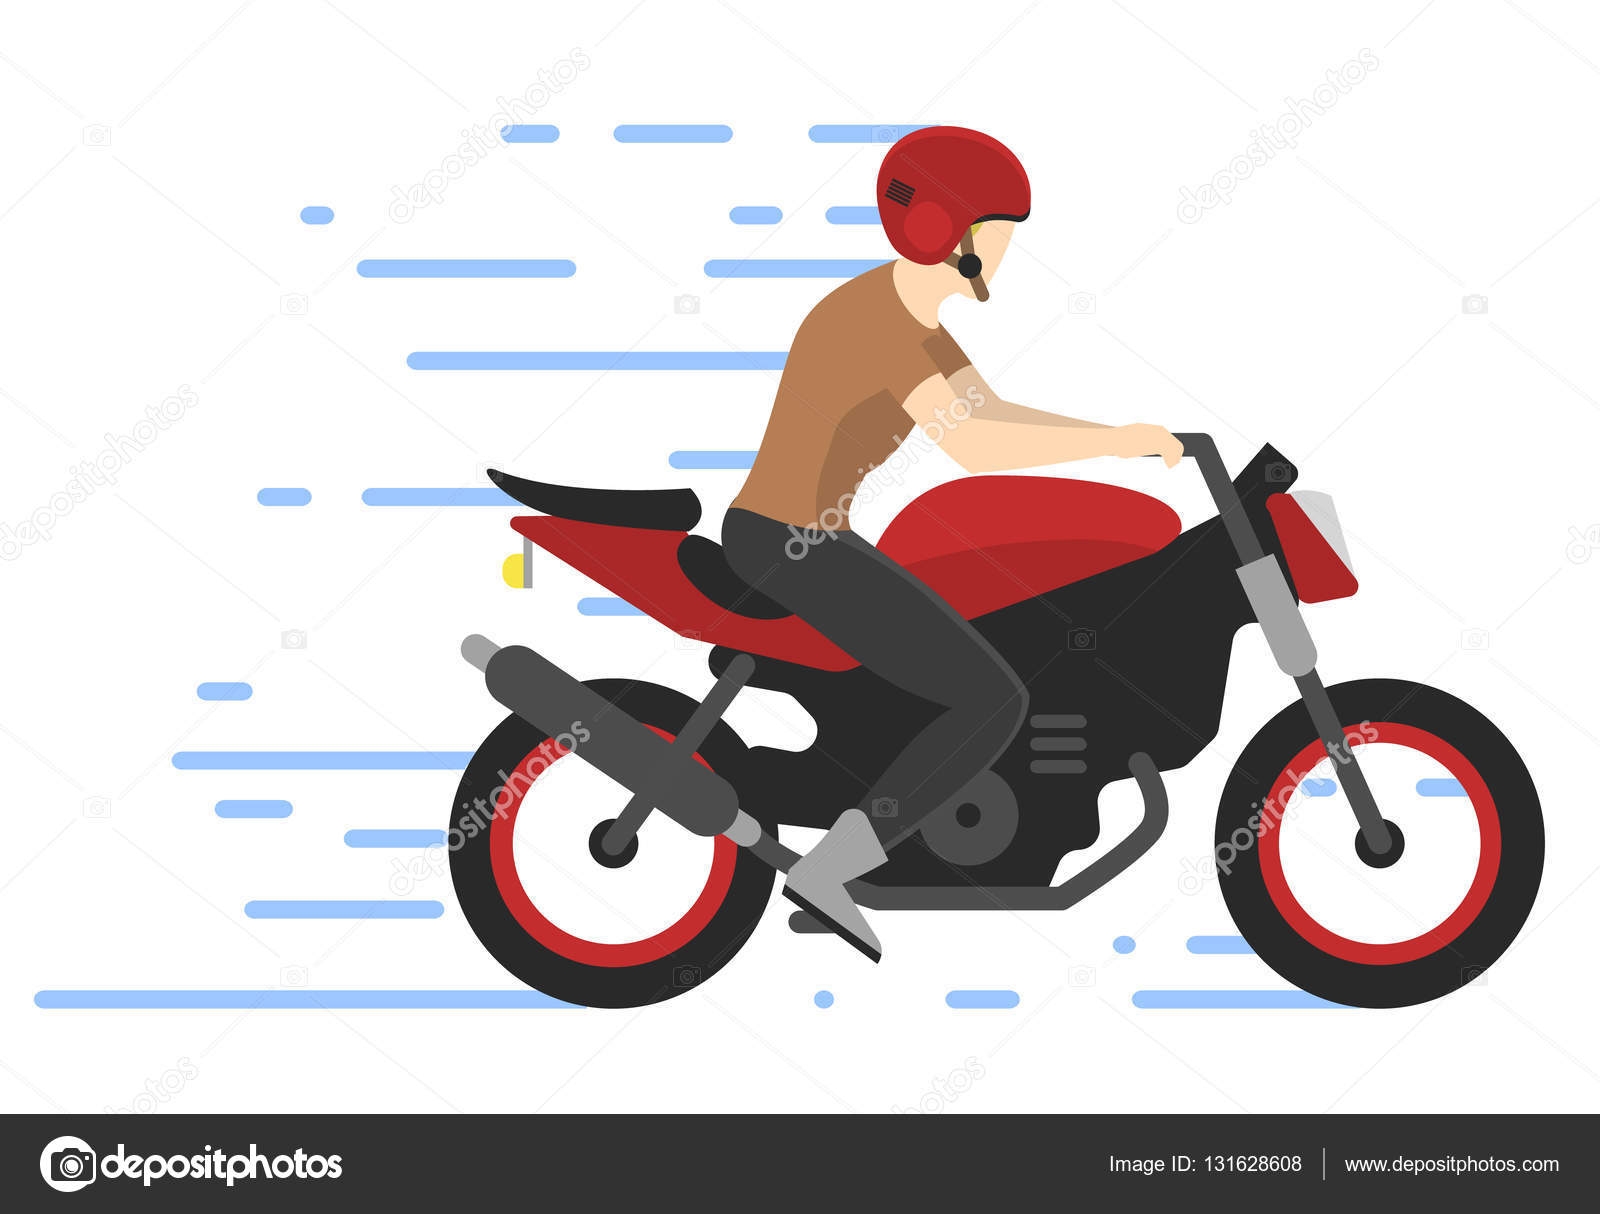 Человечек на мотоцикле